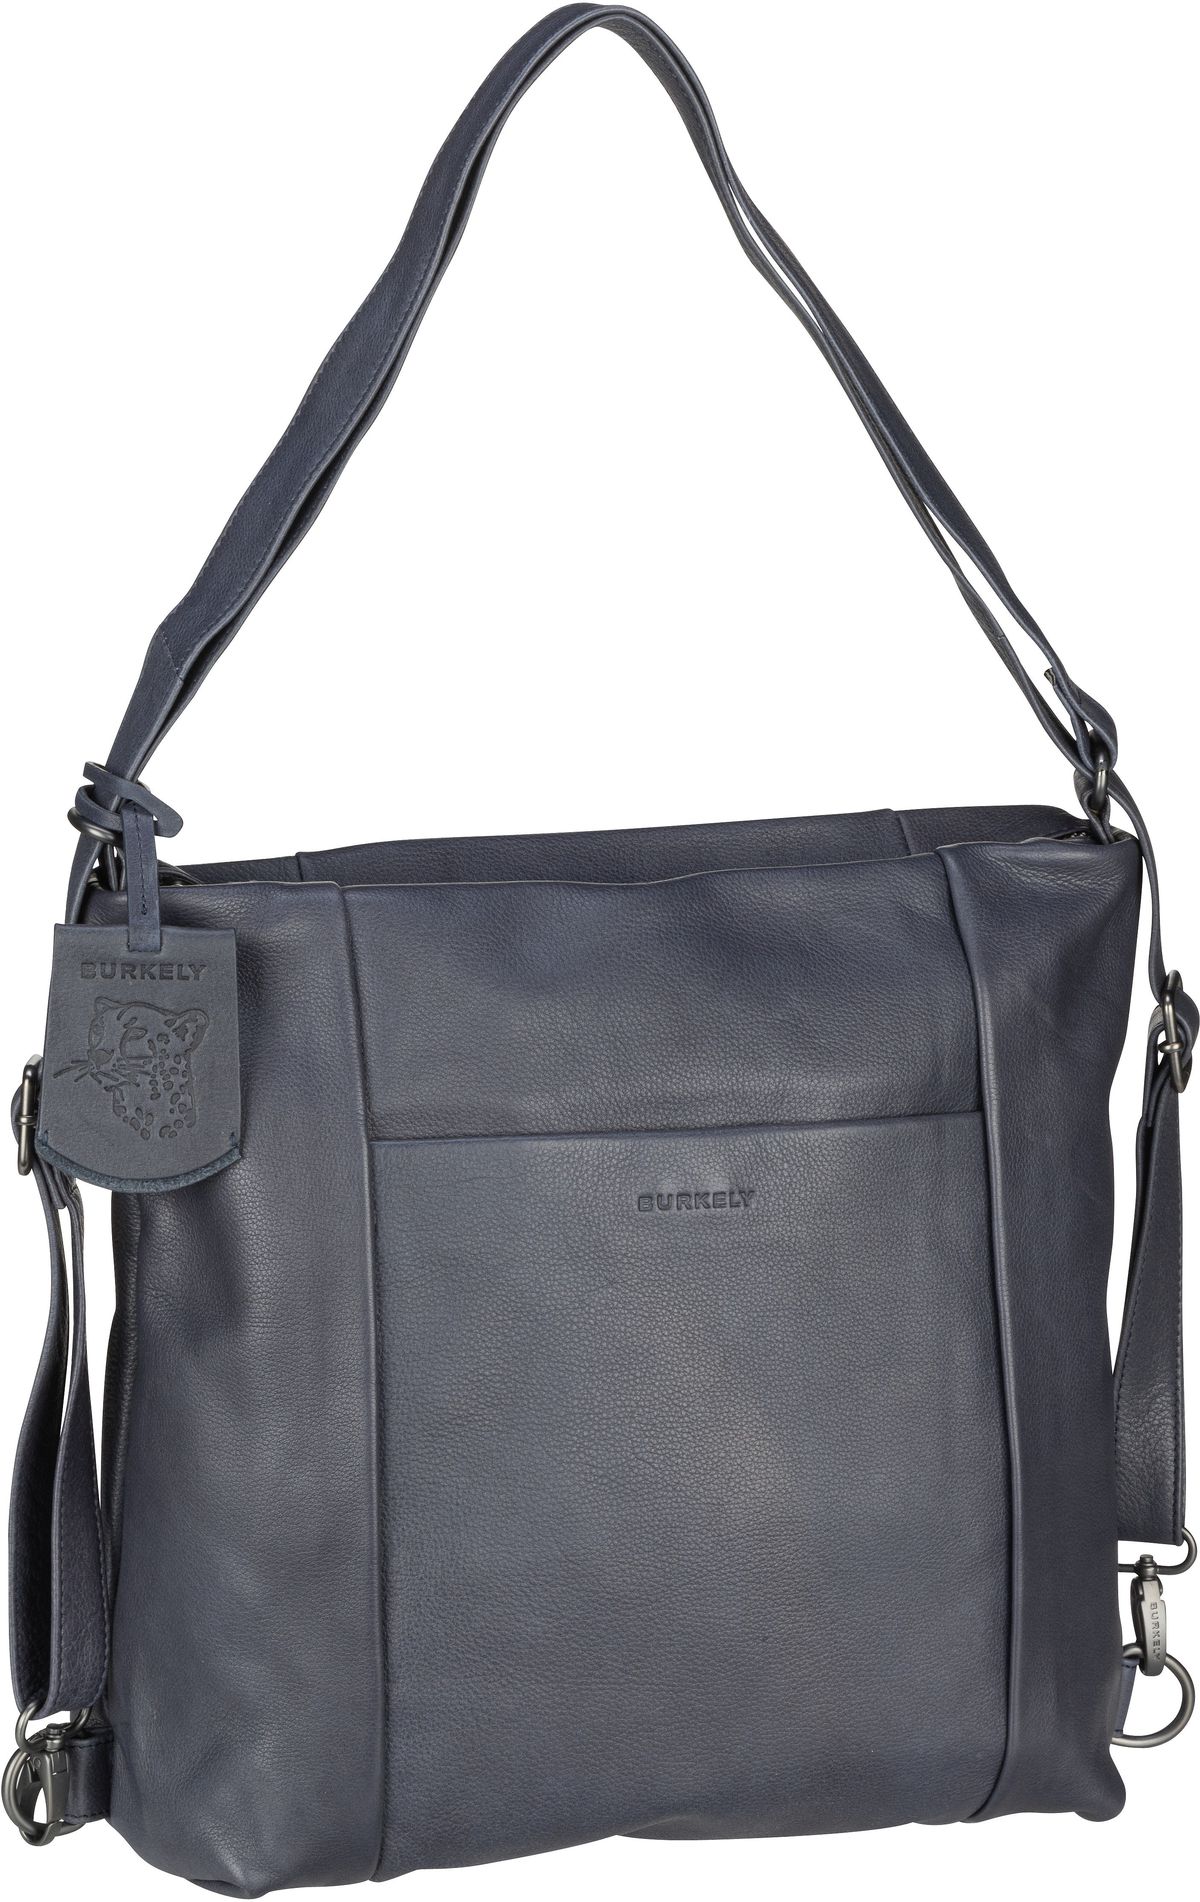 Burkely Handtasche Just Jolie Backpack Hobo Blue (12.7 Liter)  - Onlineshop Taschenkaufhaus